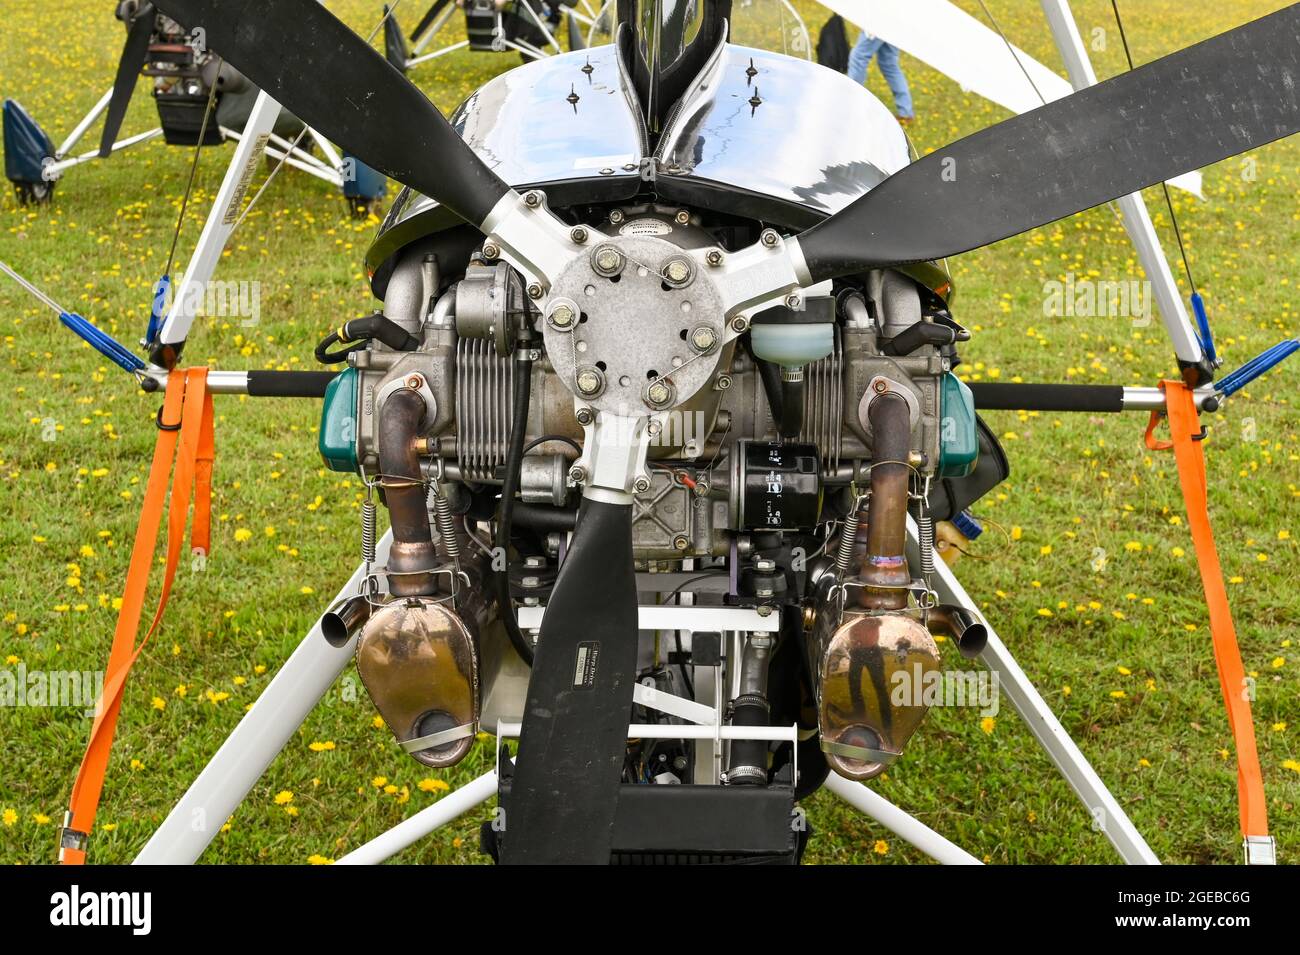 Popham, bei Basingstoke, England - August 2021: Nahaufnahme des Propellers und Drehmotors eines Ultraleichtflugzeugs. Stockfoto